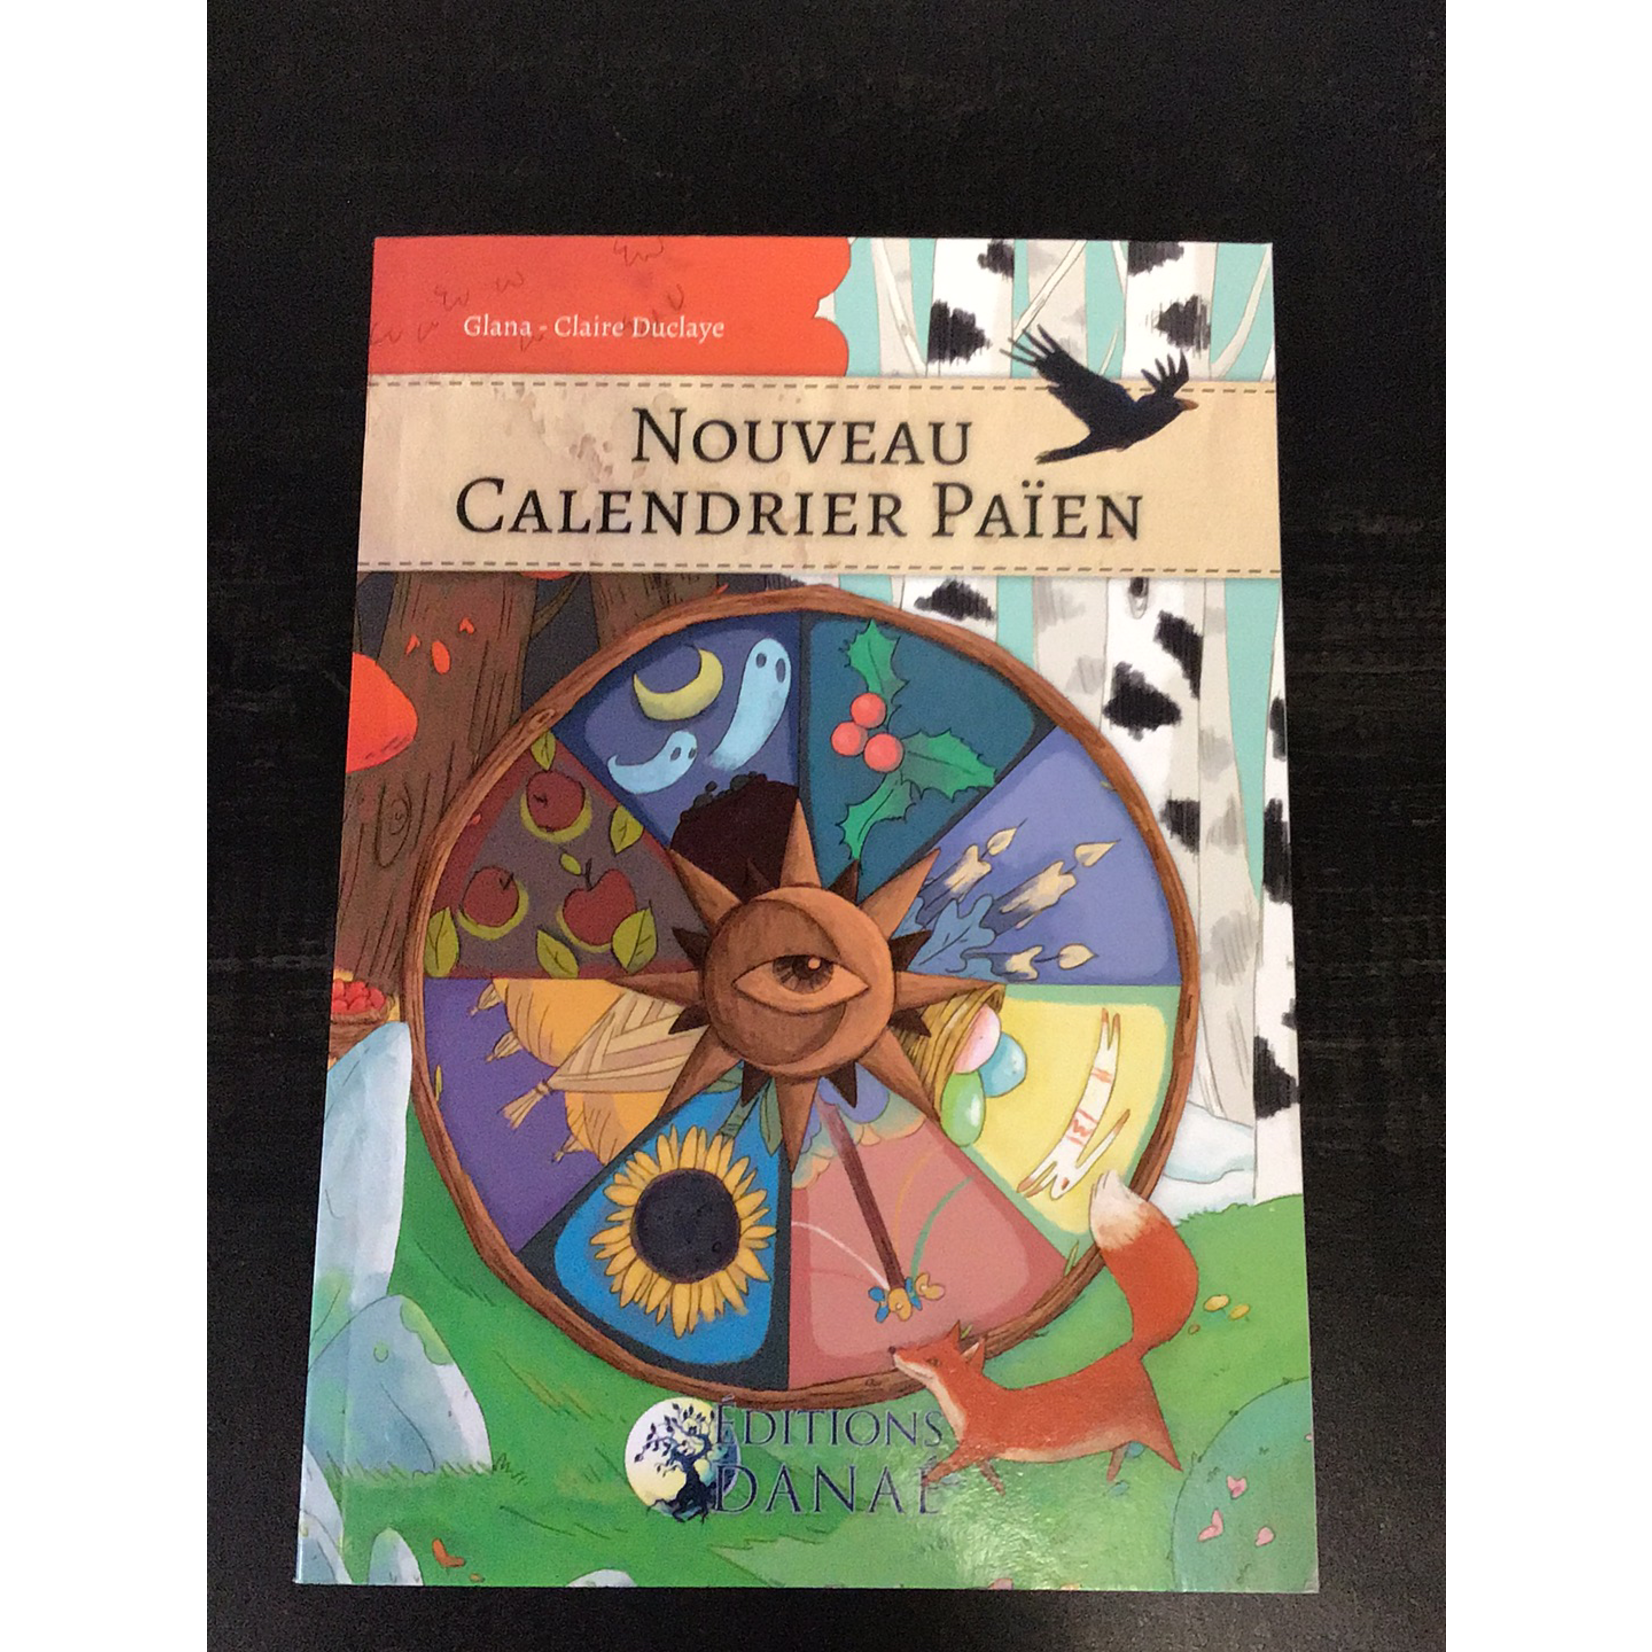 Nouveau calendrier païen - Glana-Claire Duclaye